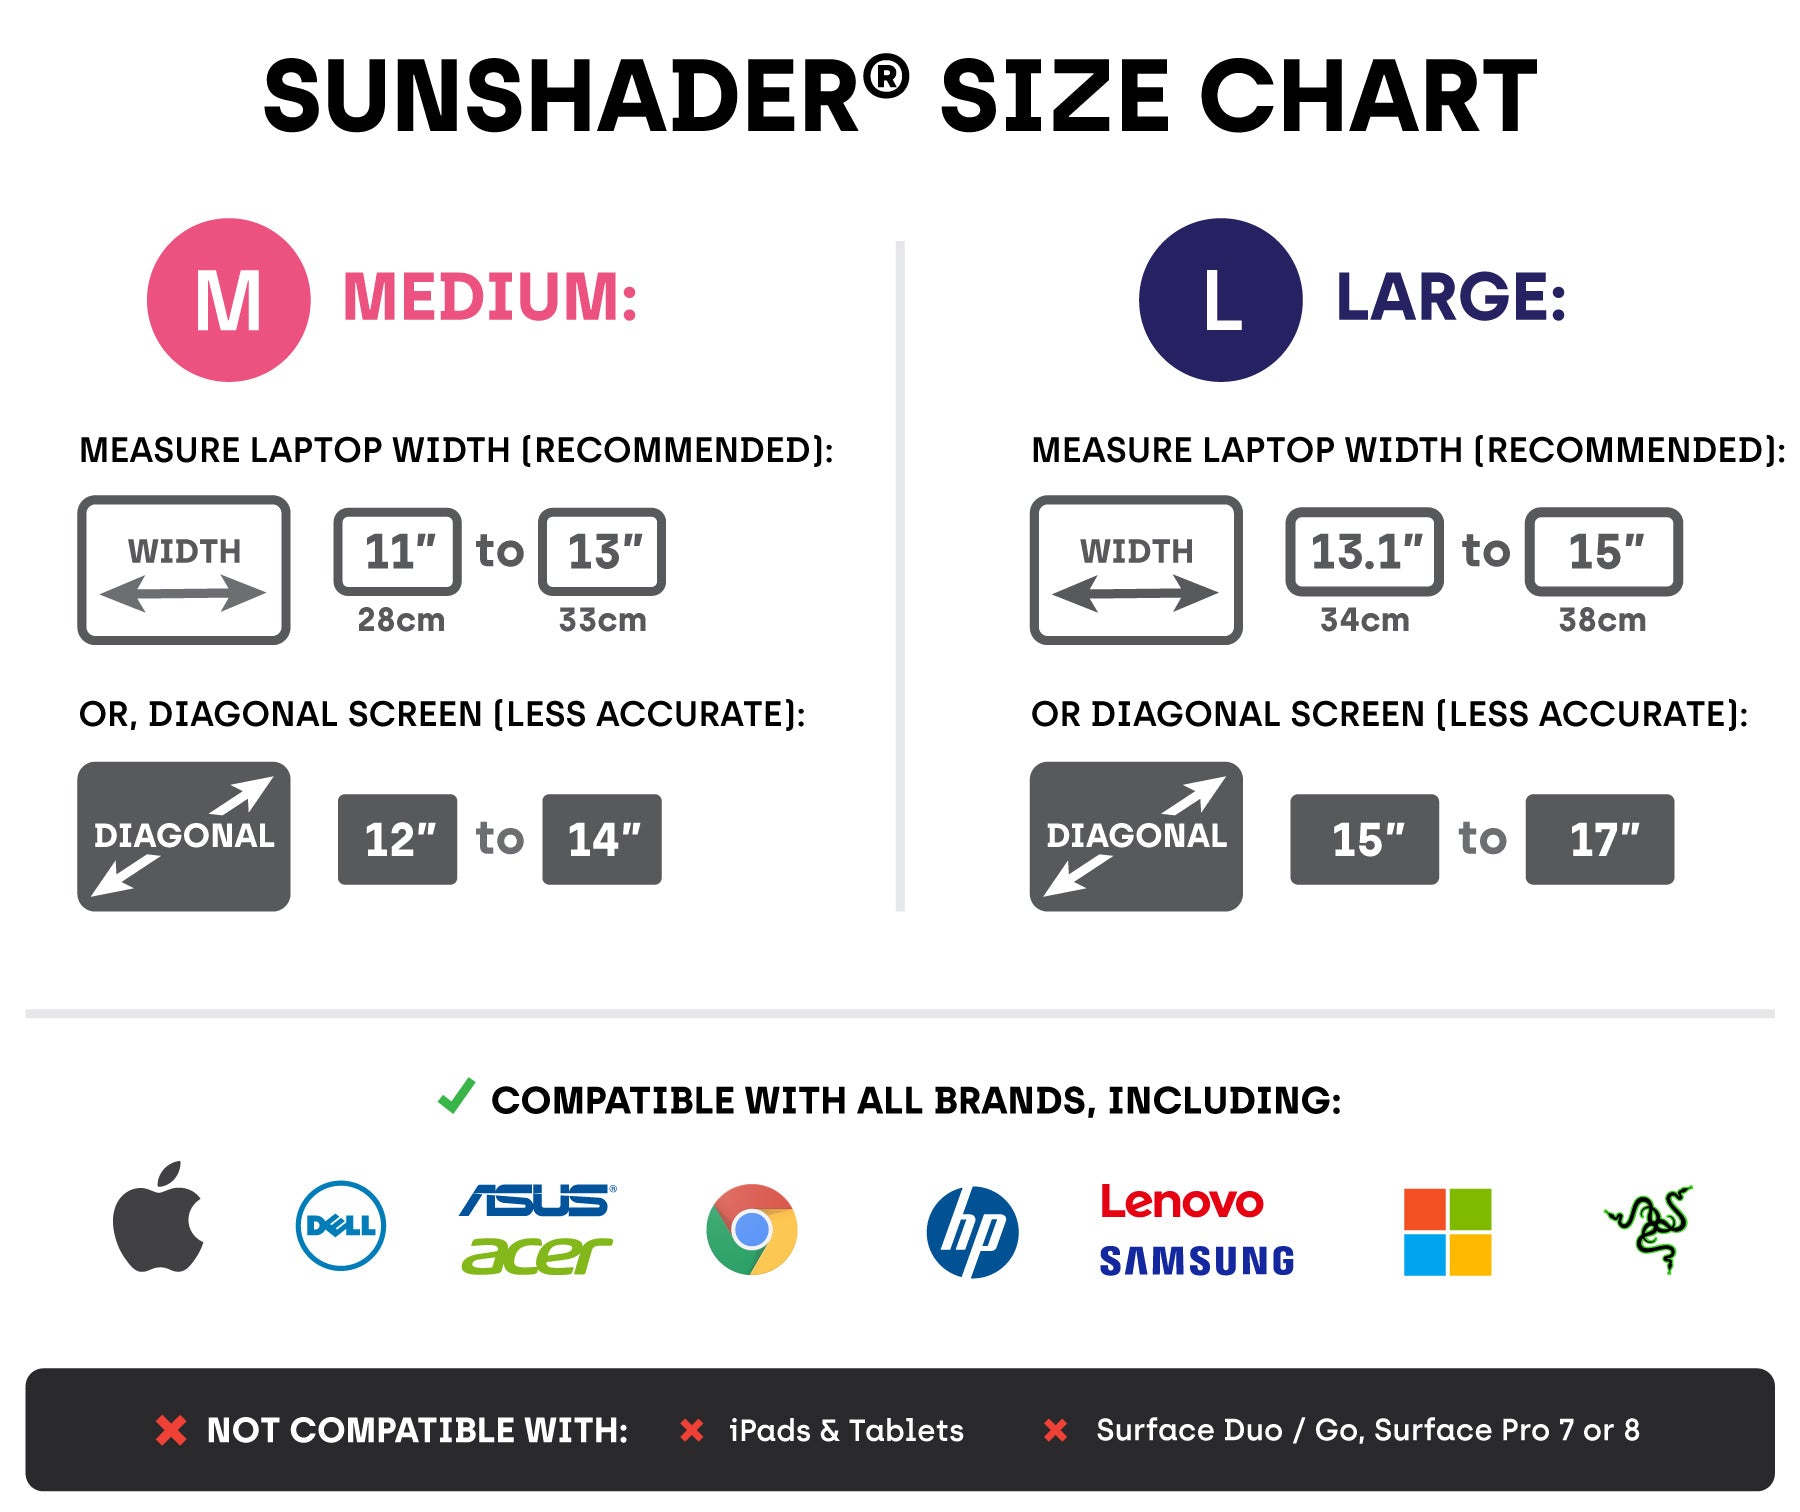 SunShader 3 Special Offer